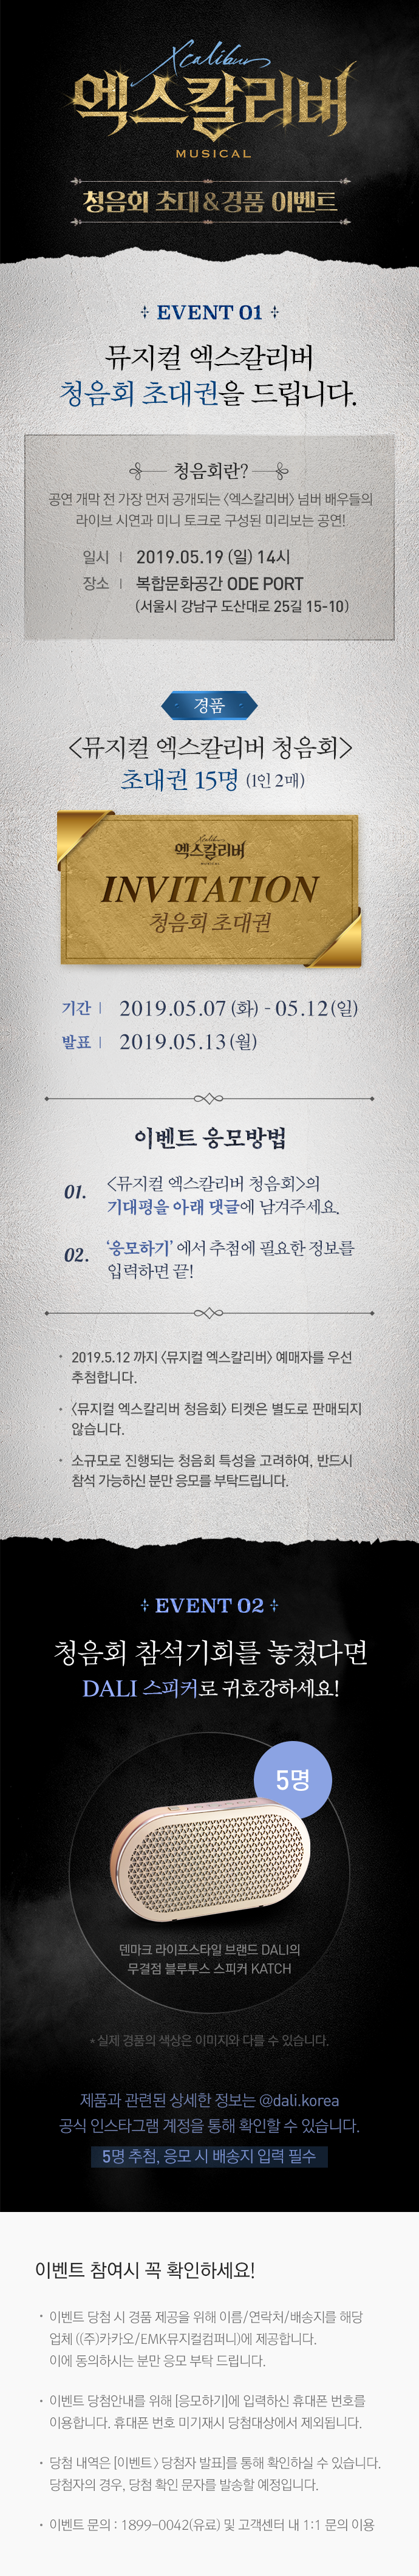 뮤지컬 엑스칼리버 청음회 초대&경품 이벤트